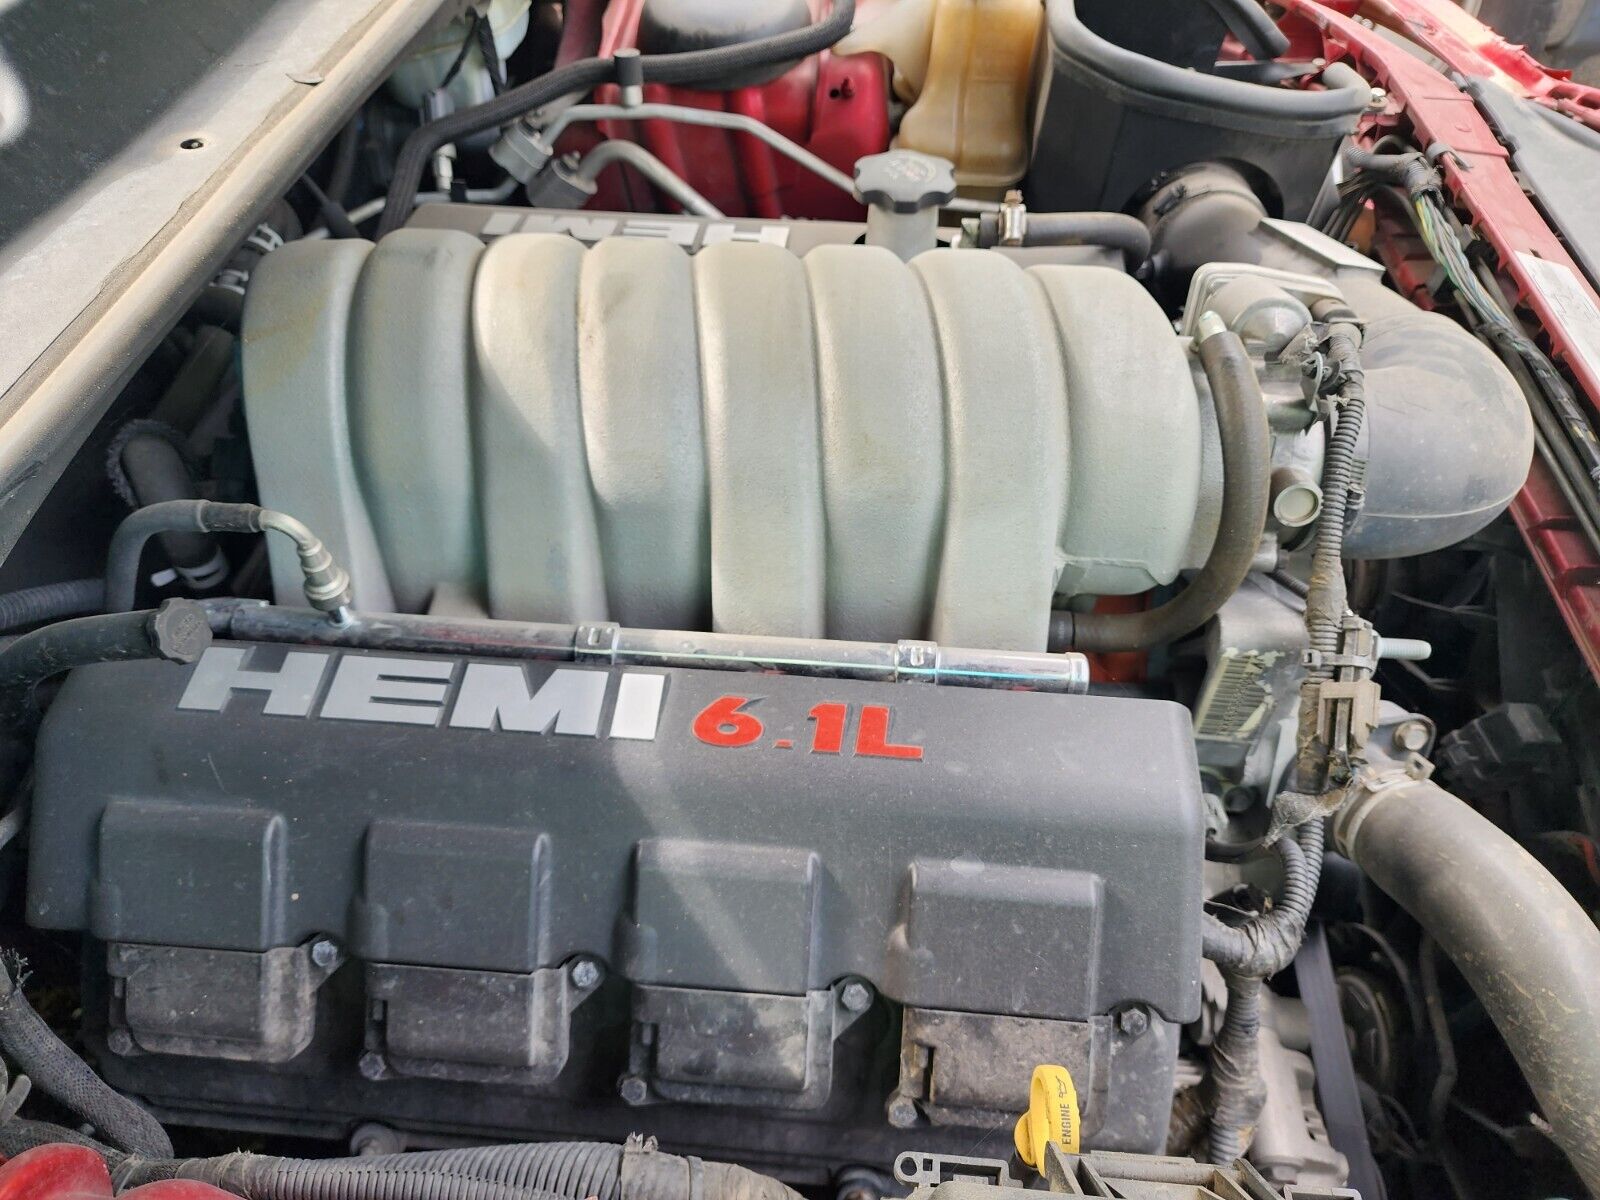 06-10 6.1L hemi engine 6.1 SRT8 SRT charger, challenger, grand cherokee, 300